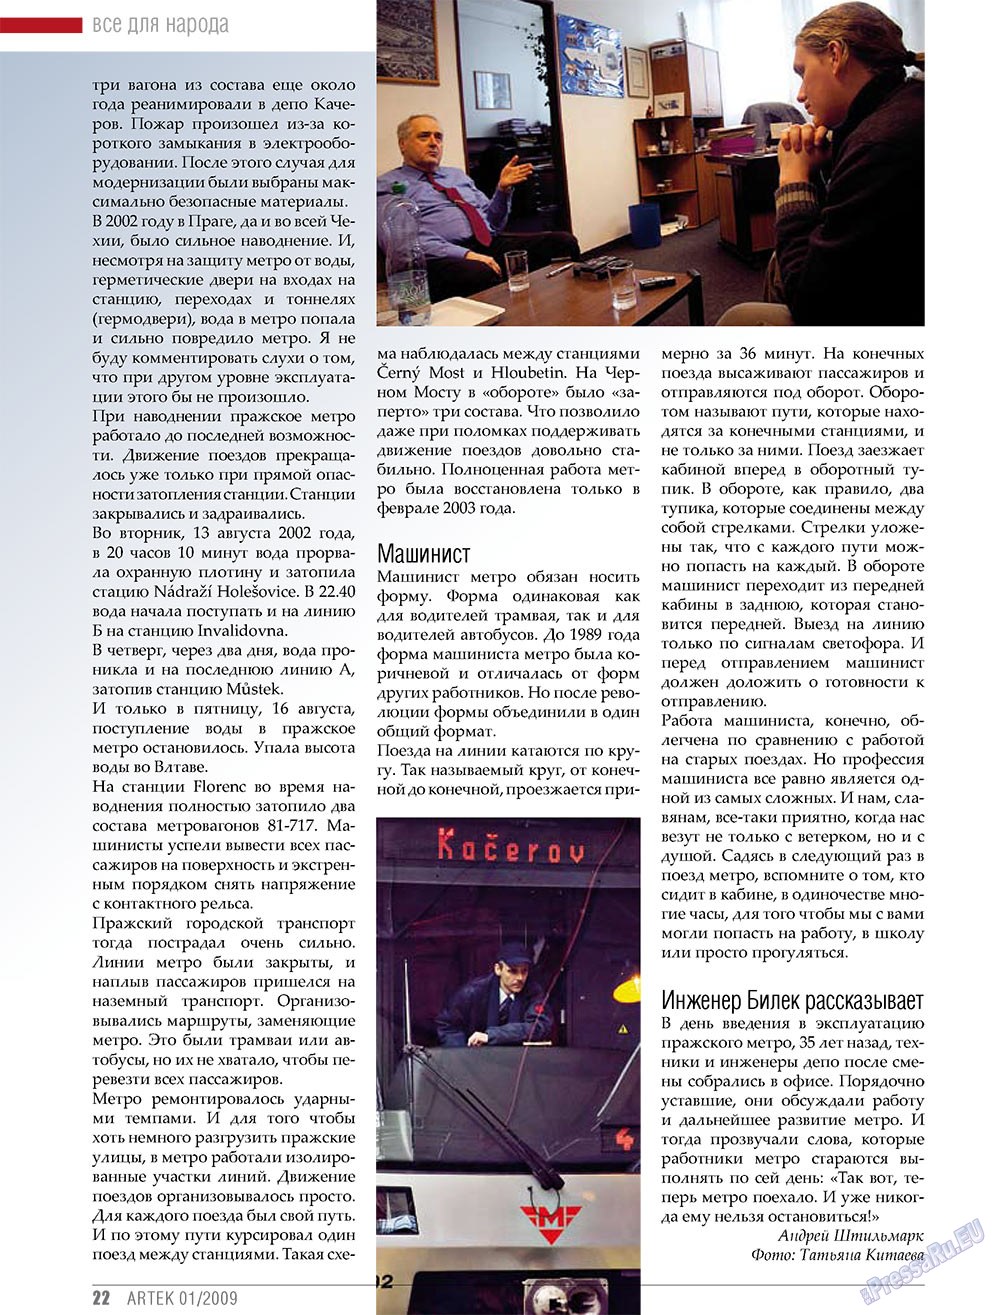 Артек, журнал. 2009 №1 стр.24